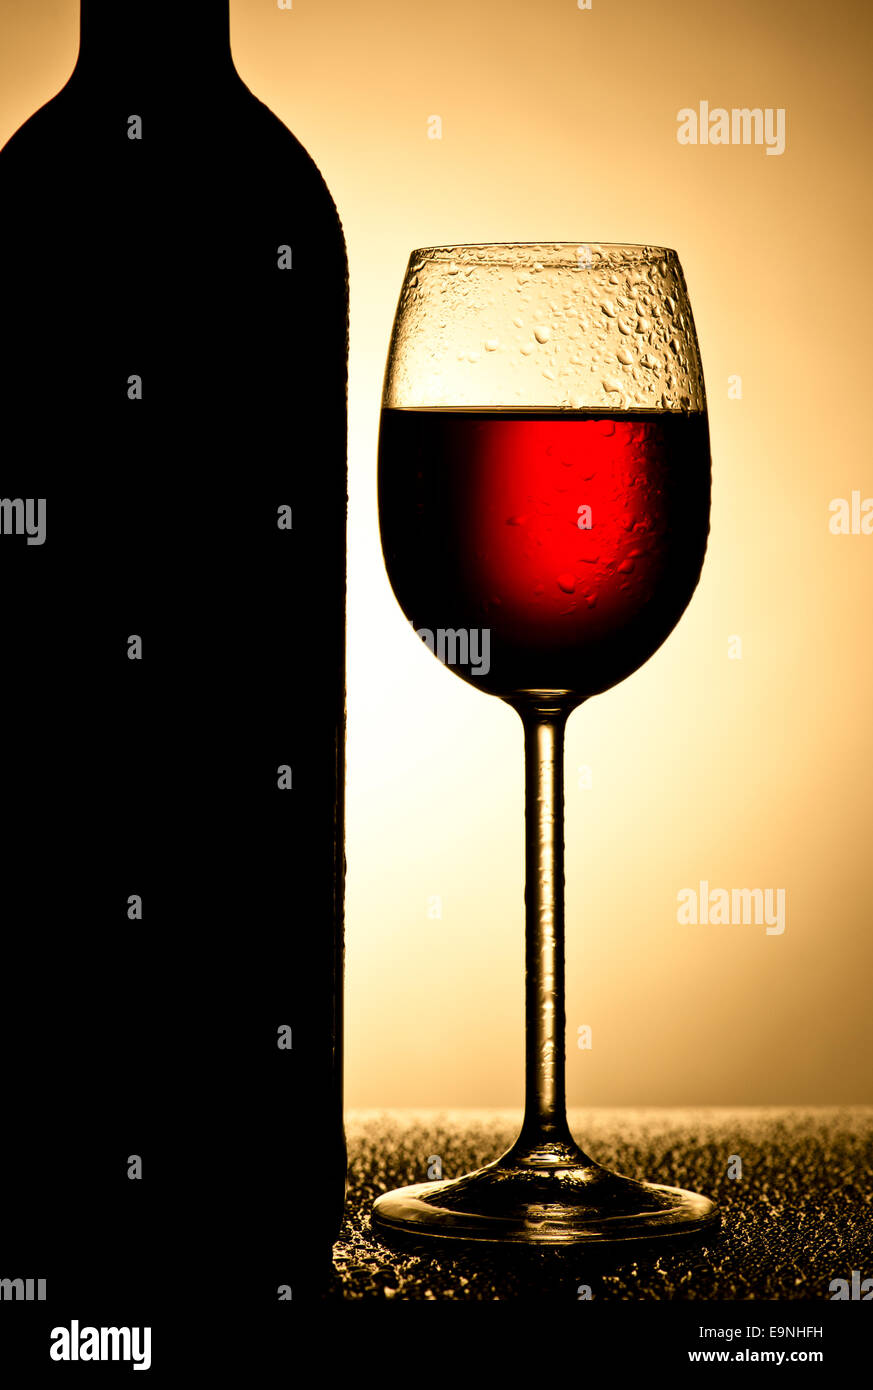 Wine glasses in backlight Stock Photo